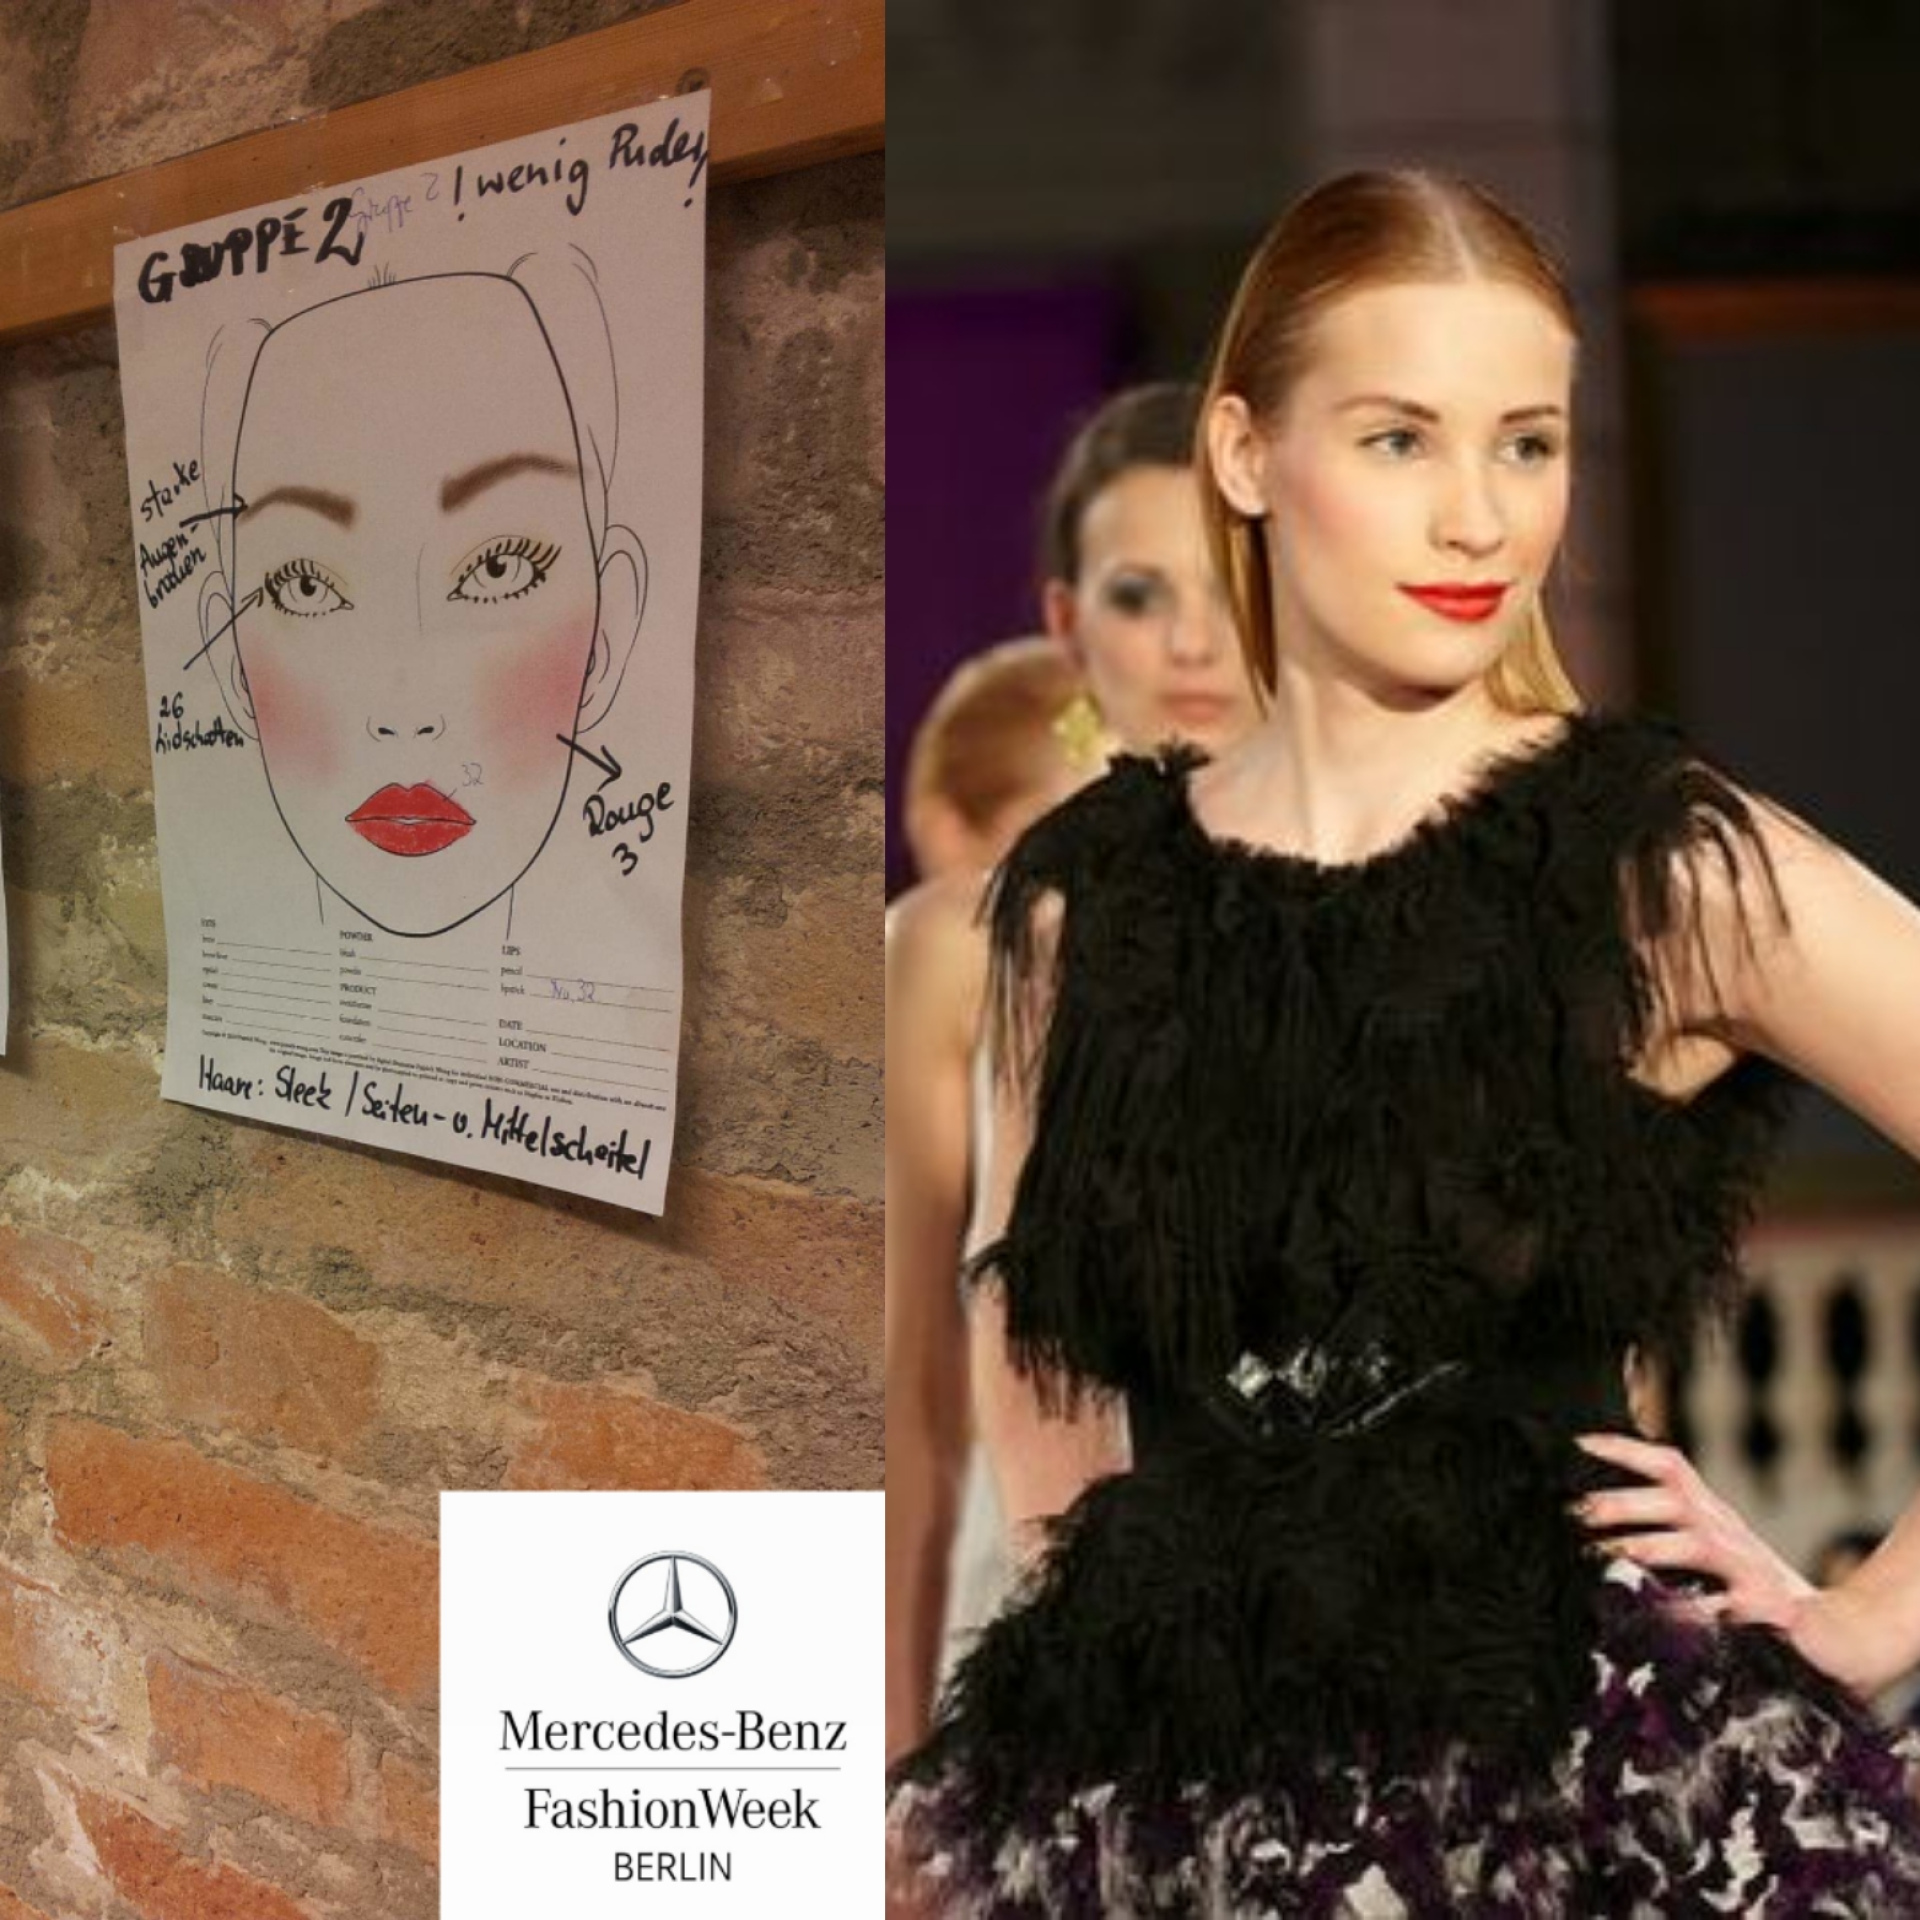 Abbildung: Collage - Mercedes Benz Fashion Week 2013